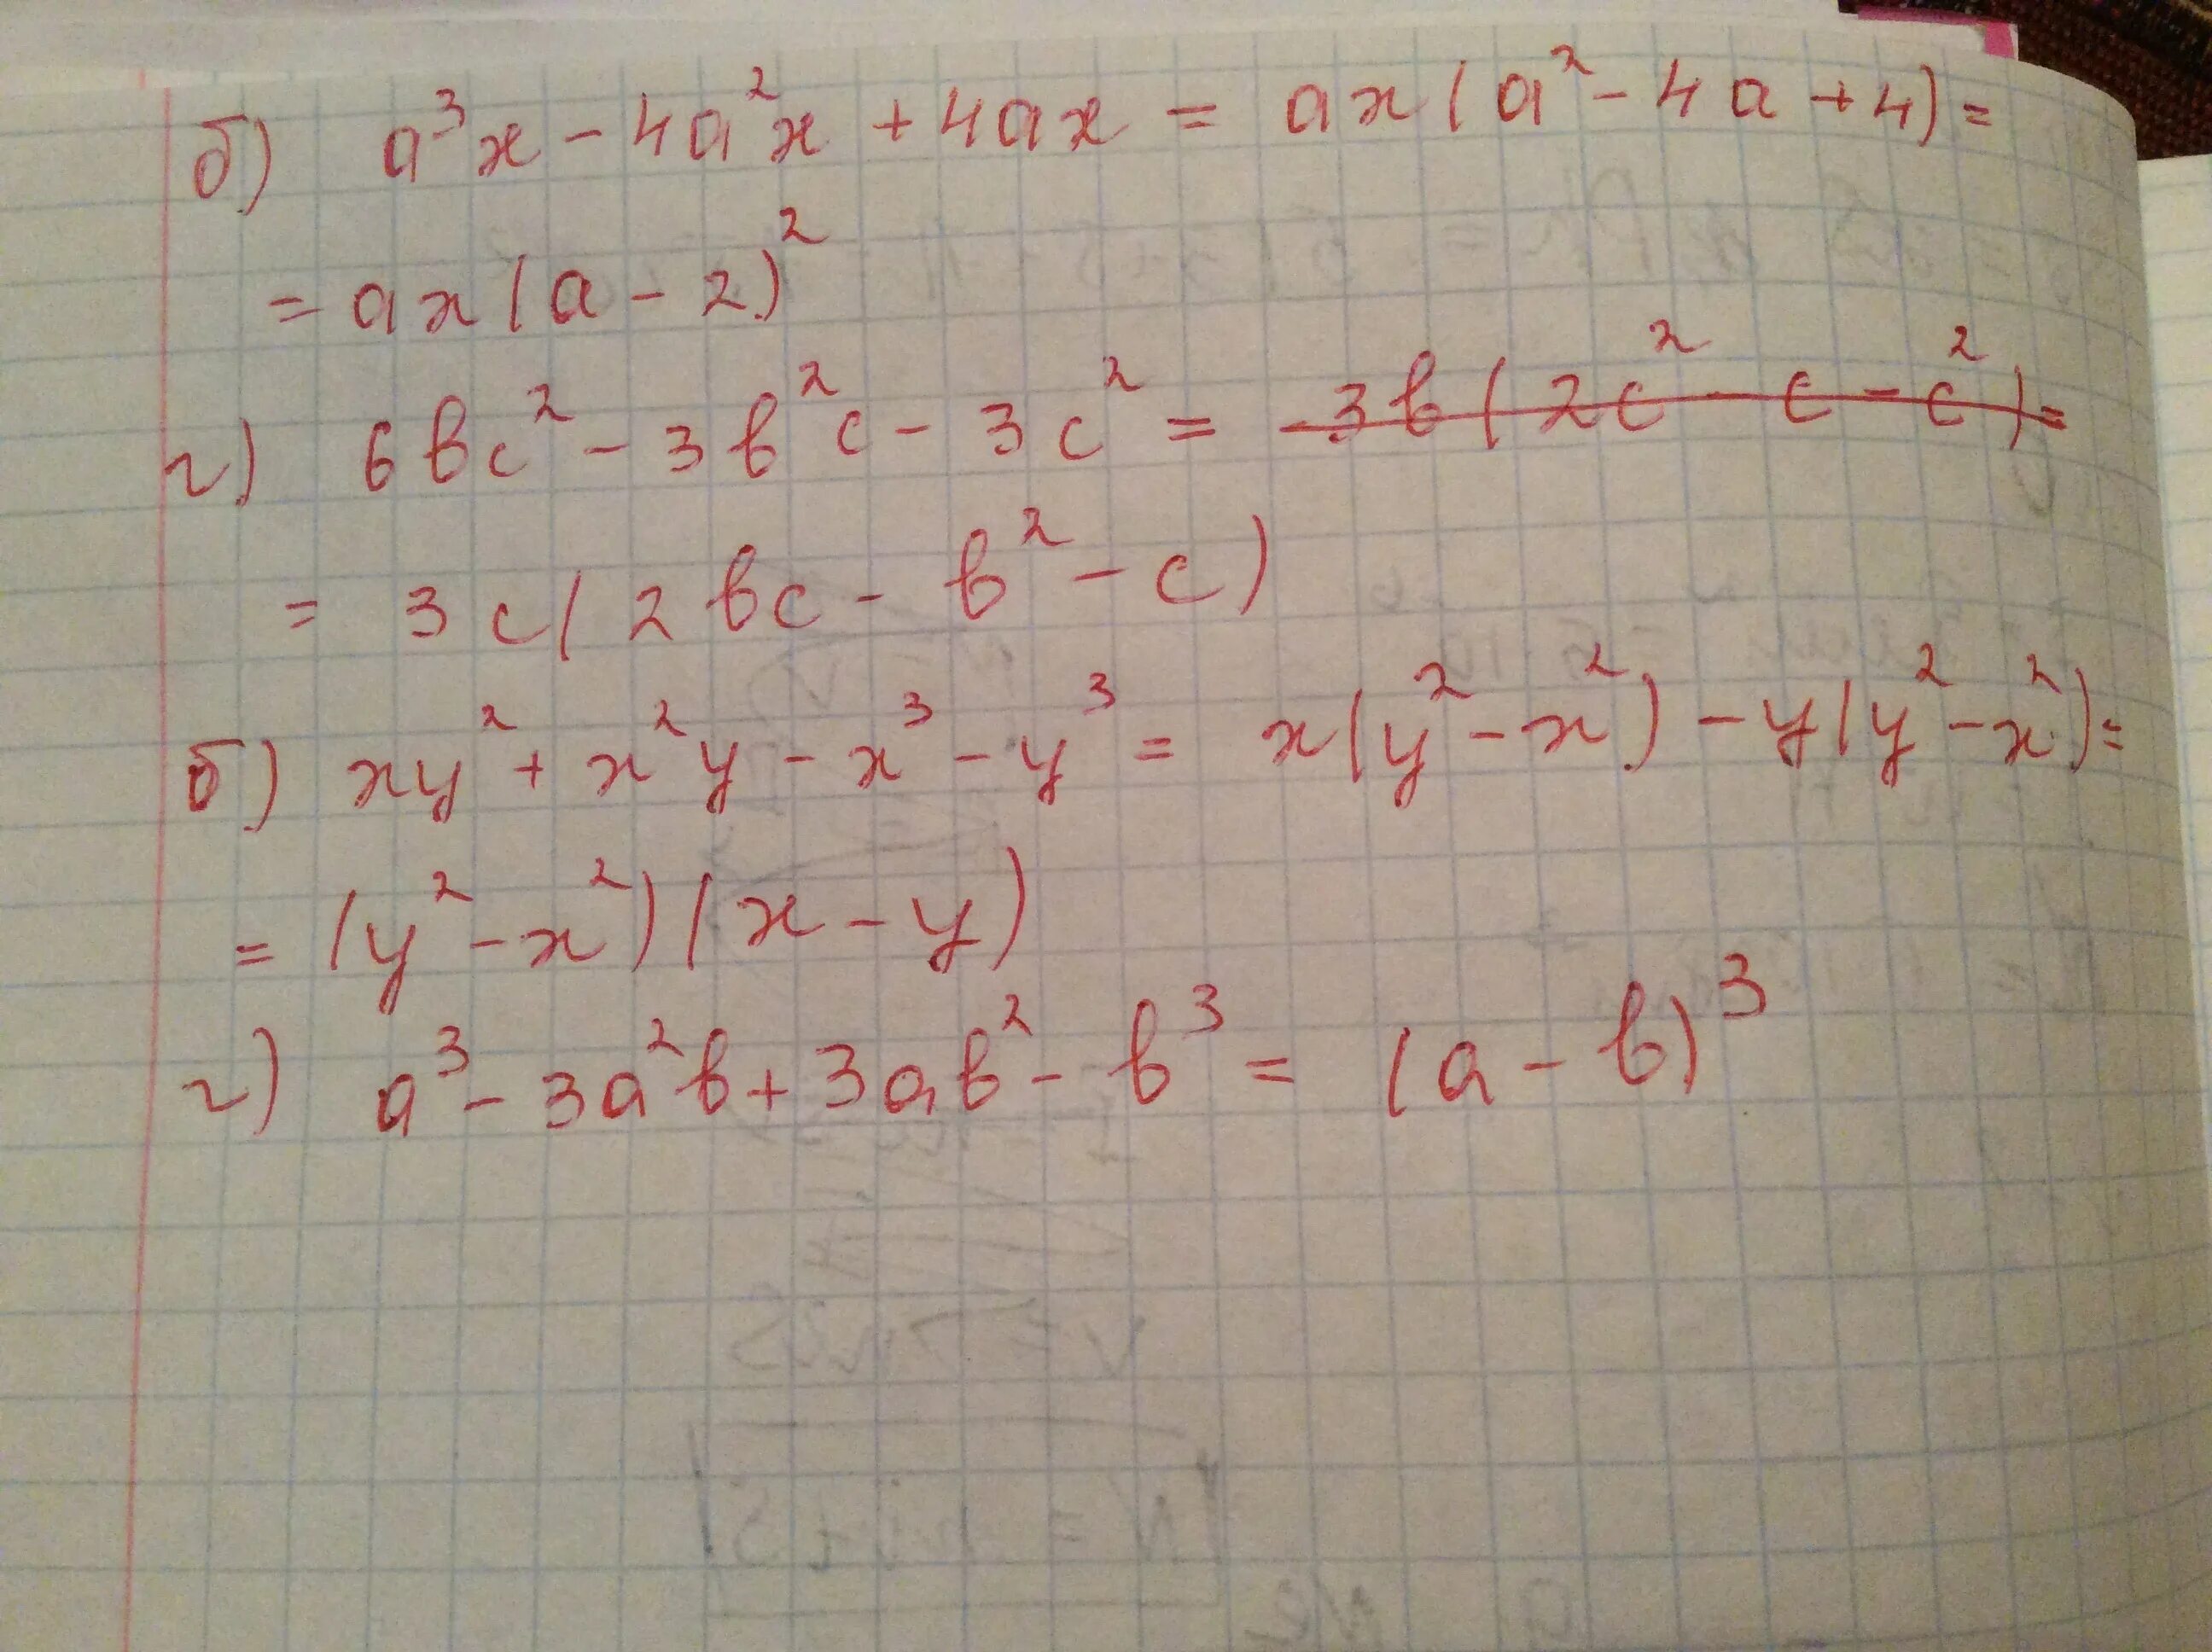 A*B*C 3x2y -0,5x3y2 2xy4. 2x^2-8 б 3/х-2. A2 4a 2 x2 AX 6 X три решения. Система x + 2y=1 x2 -XY-2x2=1. X 3a x a 3 0